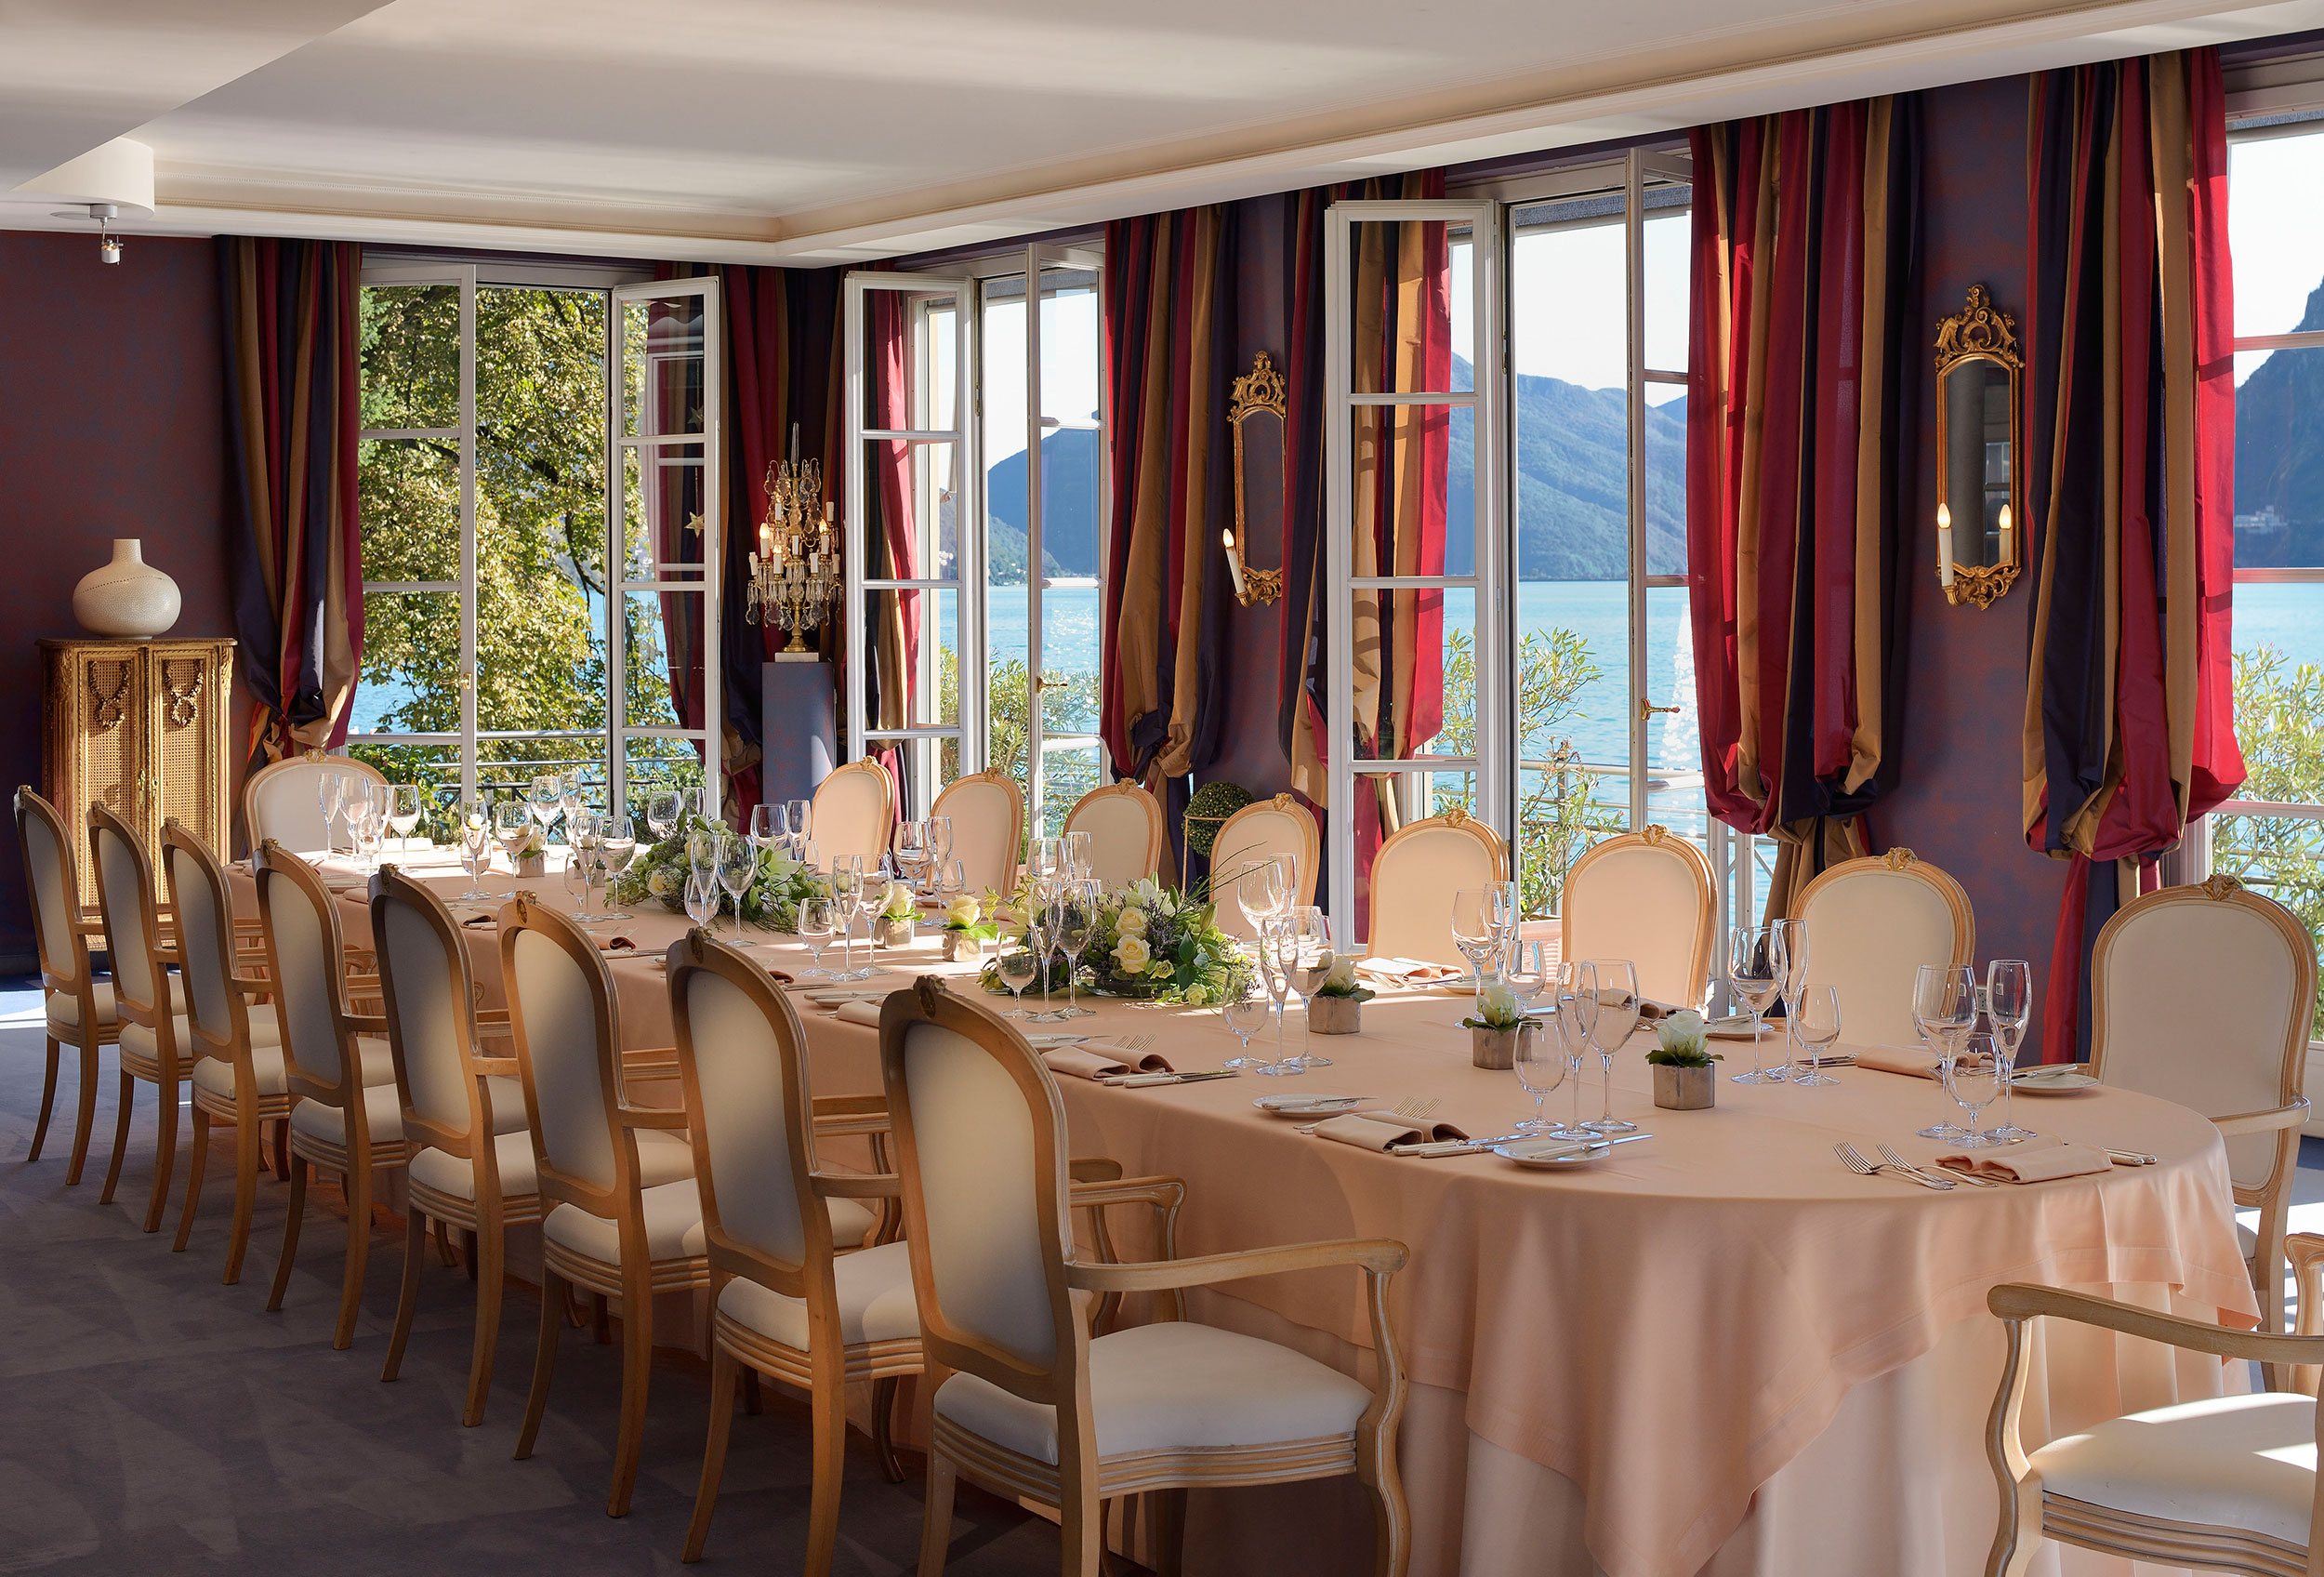 Ristorante Artè al Lago - Villa Castagnola Grand Hotel Lugano